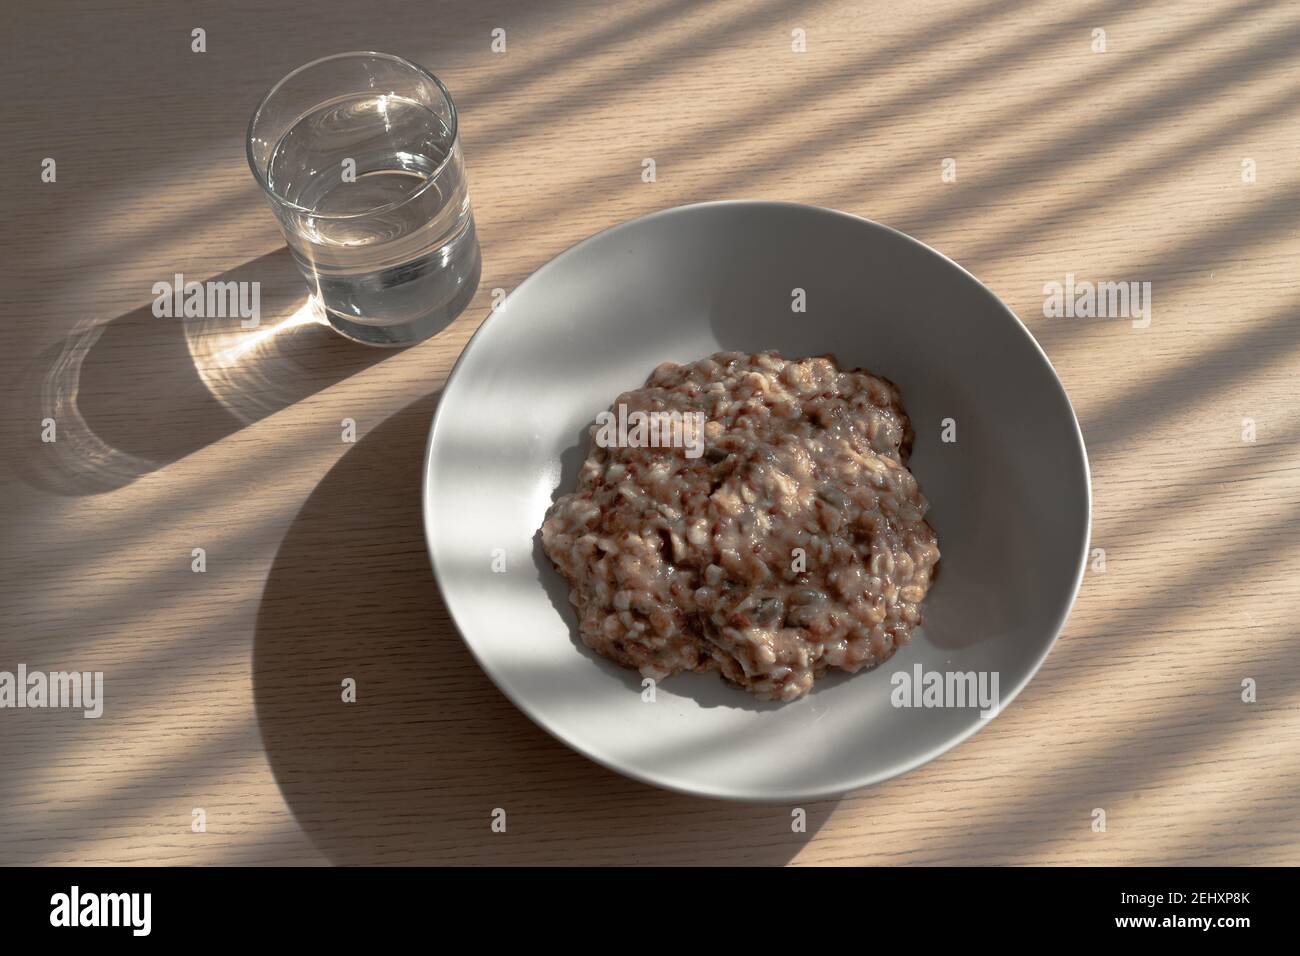 Desayuno saludable sobre mesa de madera: Un vaso de agua y un plato de gachas de avena caliente con linaza, semillas de calabaza. Foto de stock